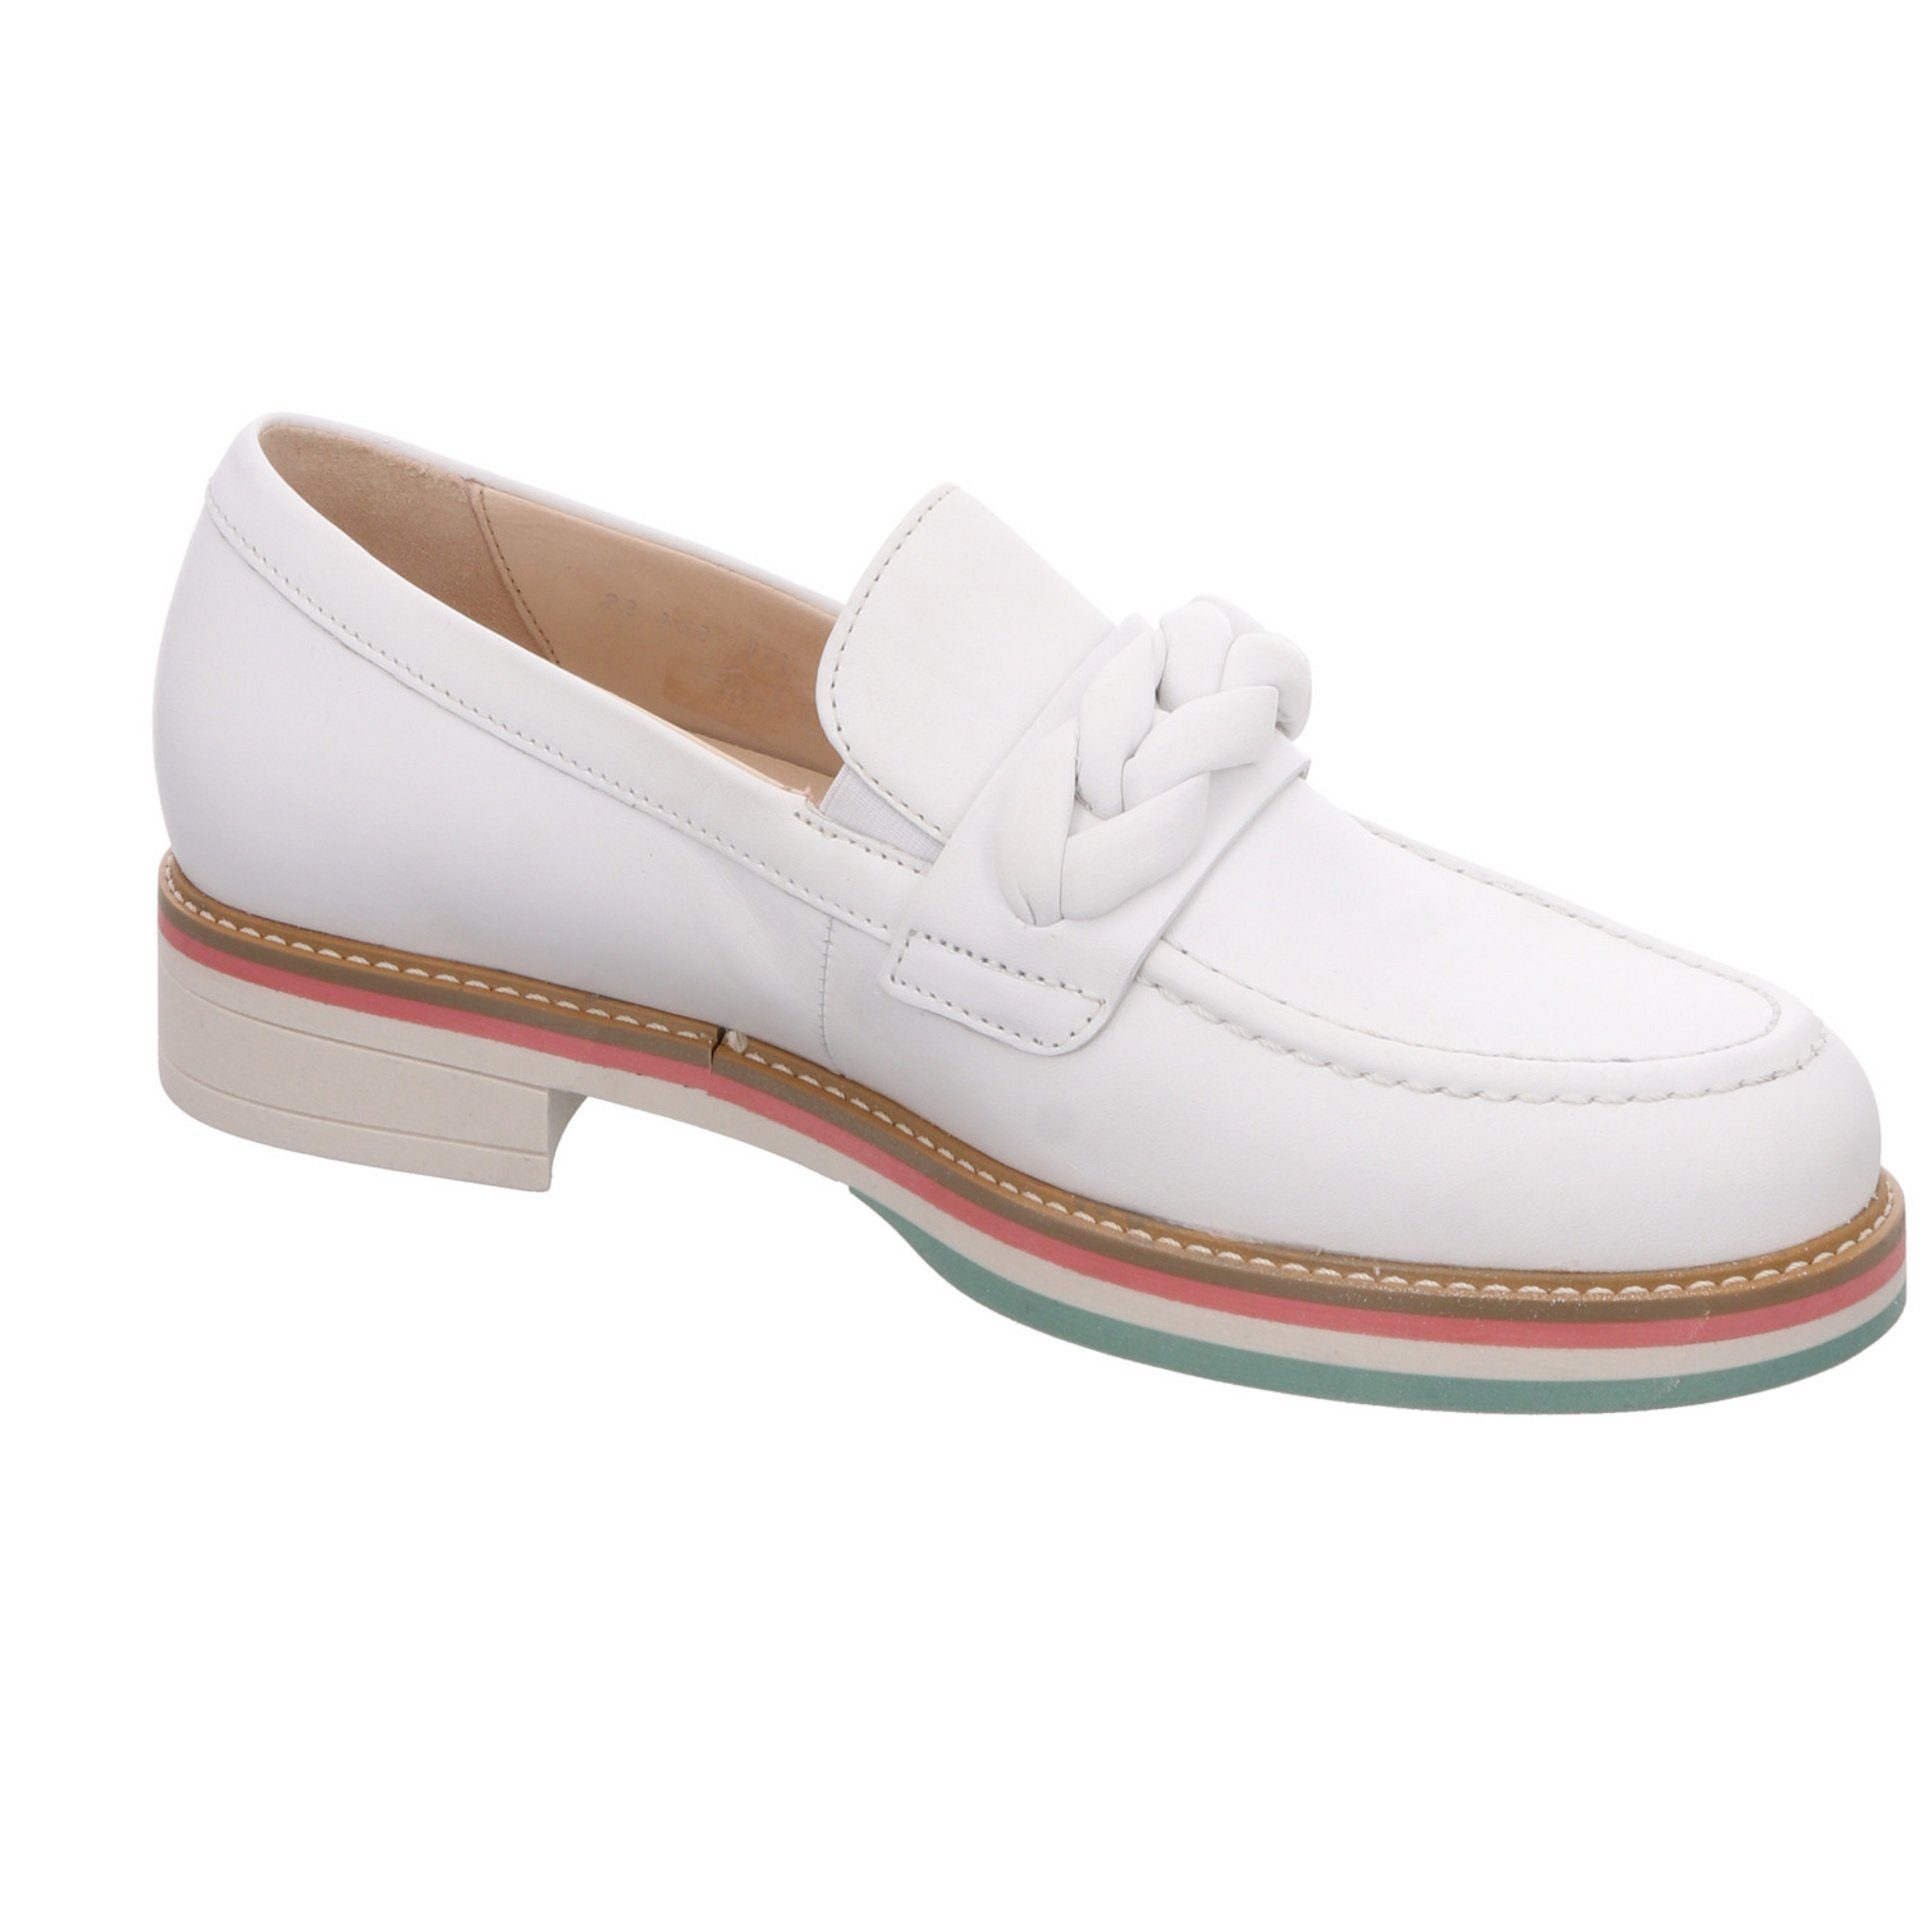 Damen Schuhe (weiss Slipper Gabor / Glattleder Florenz Slipper 50) Slipper Weiß